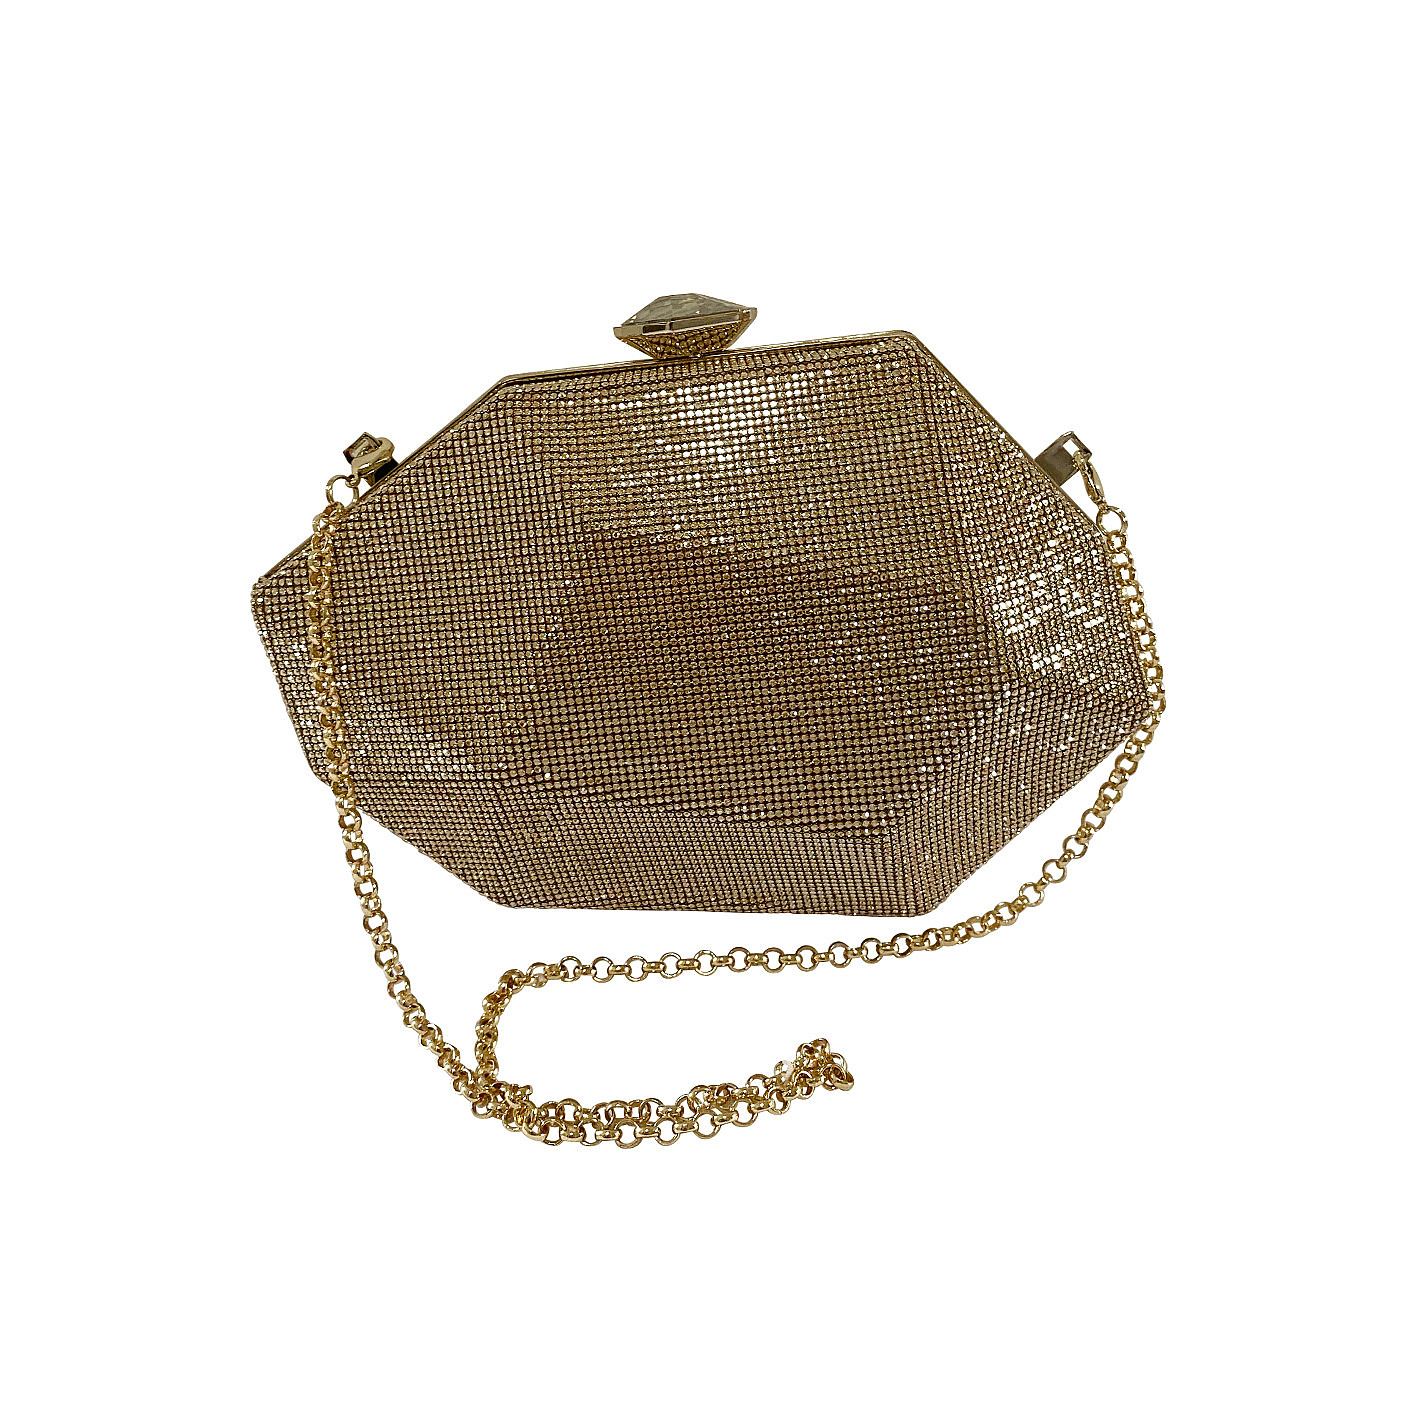 Atelier Swarovski Crystal geometric clutch with chain gold